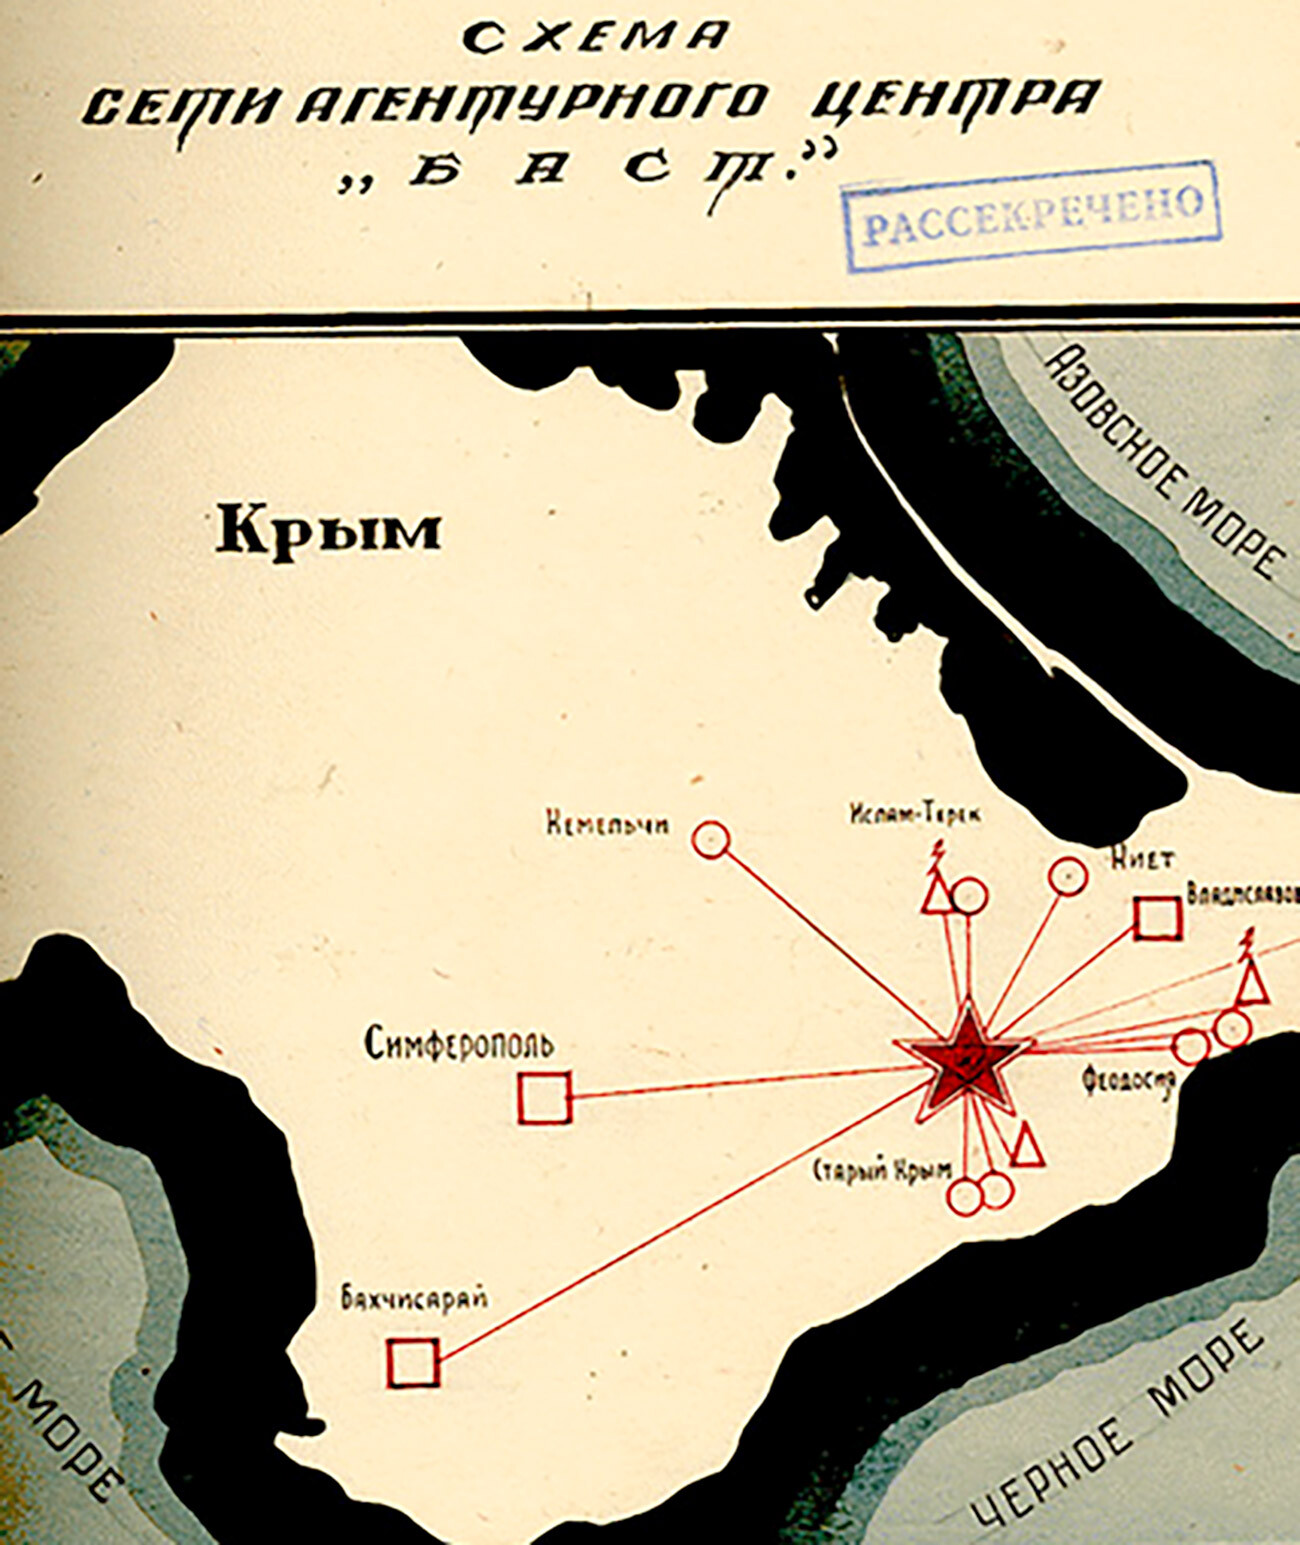 Shema mreže agentov centra Bast na Krimu, 1943-1944
